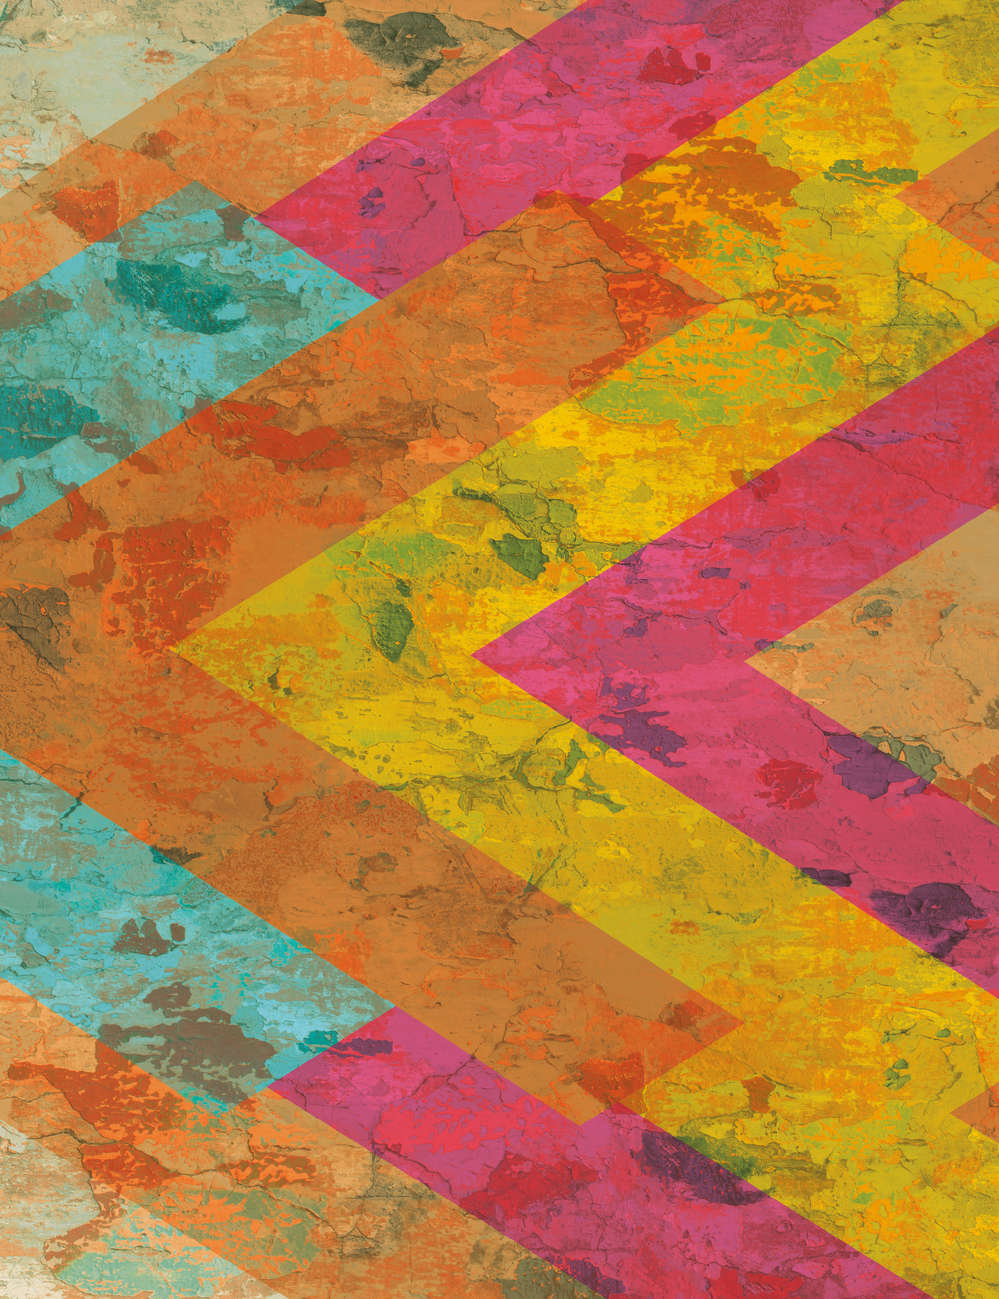             Papel pintado rústico con aspecto de hormigón y rayas de colores
        